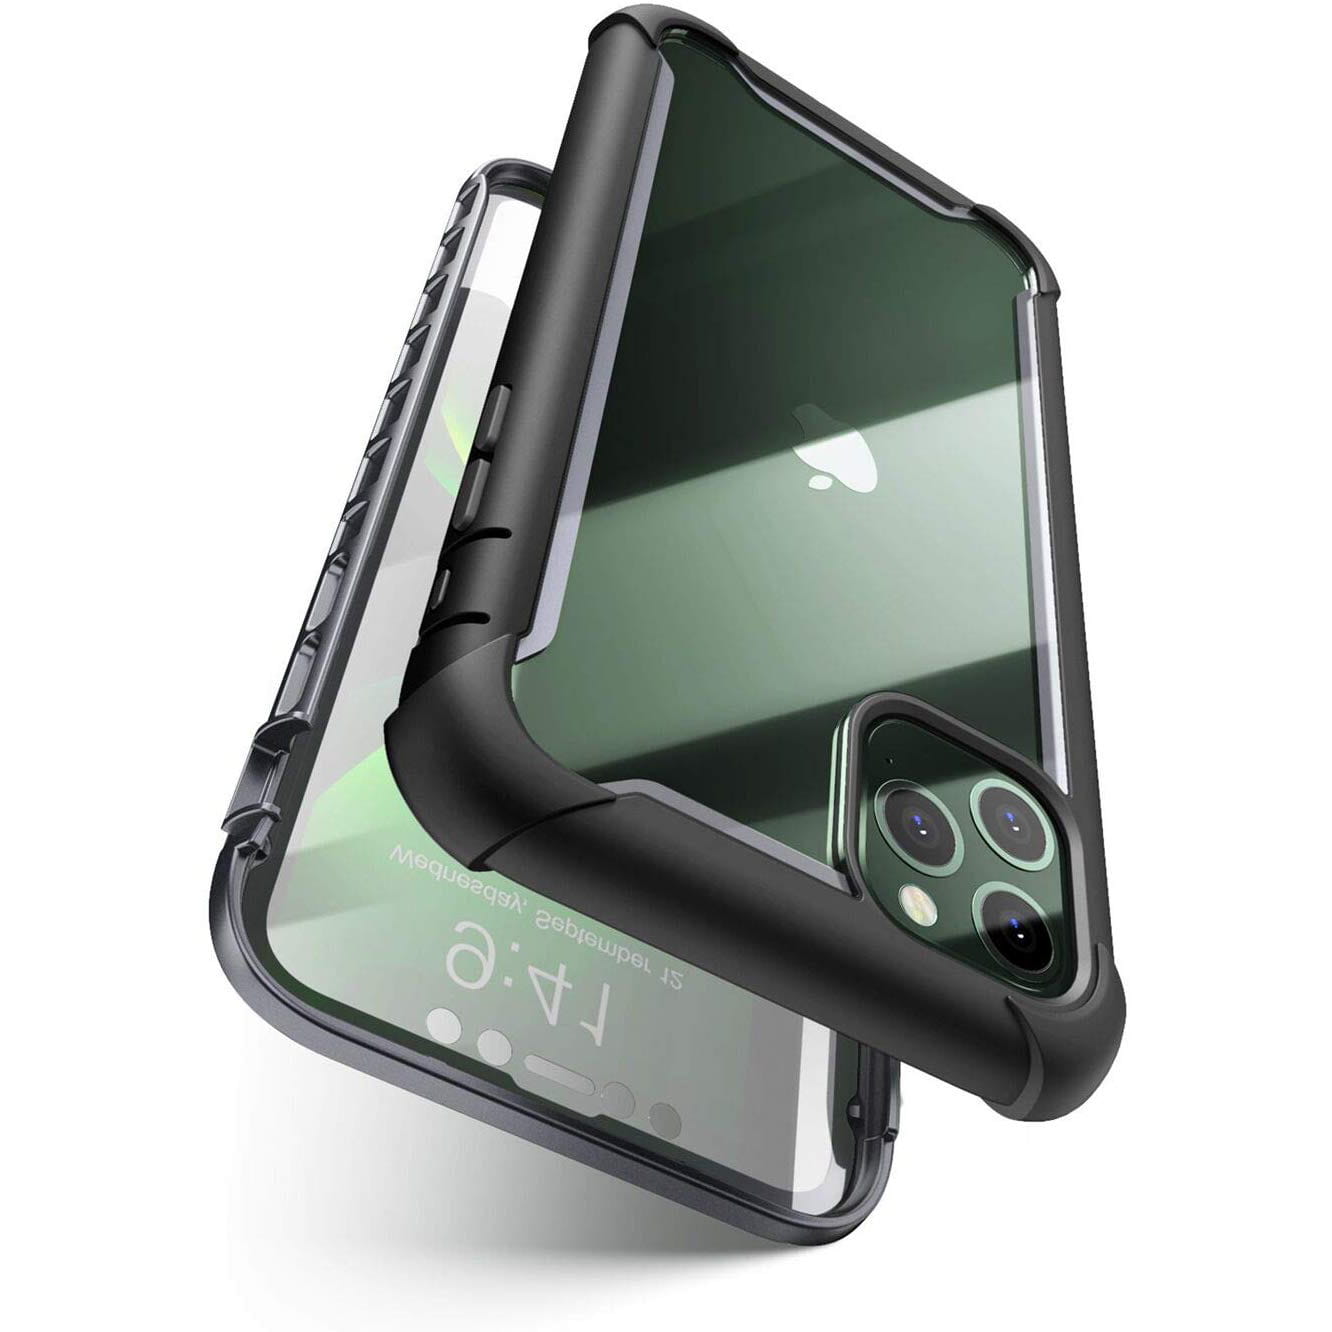 Schutzhülle Supcase i-Blason Ares SP für iPhone 11 Pro Max schwarz